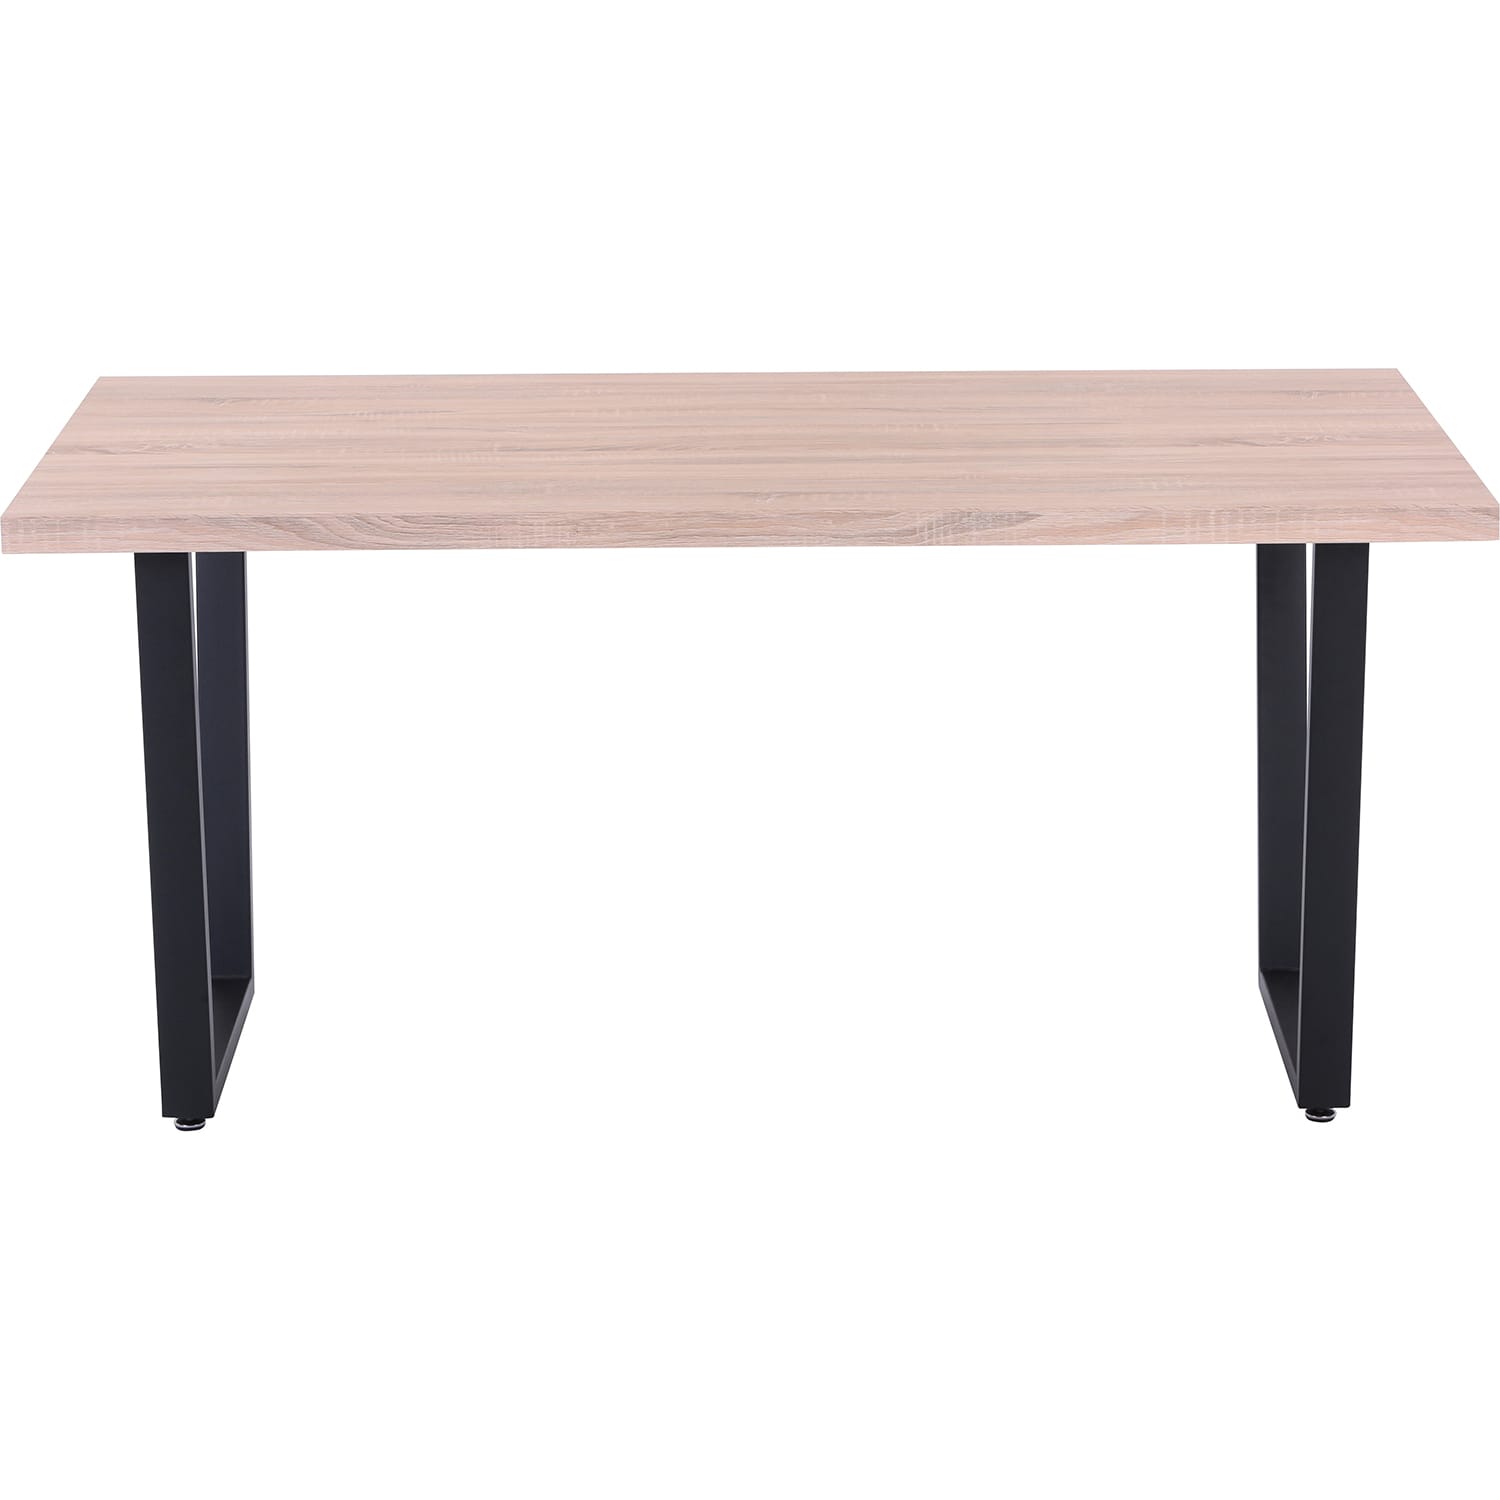 Esstisch Sonoma Eiche Dekor Kufen-Gestell 160x90 | Designtische | Esstische  | Tische | Möbel | mutoni möbel